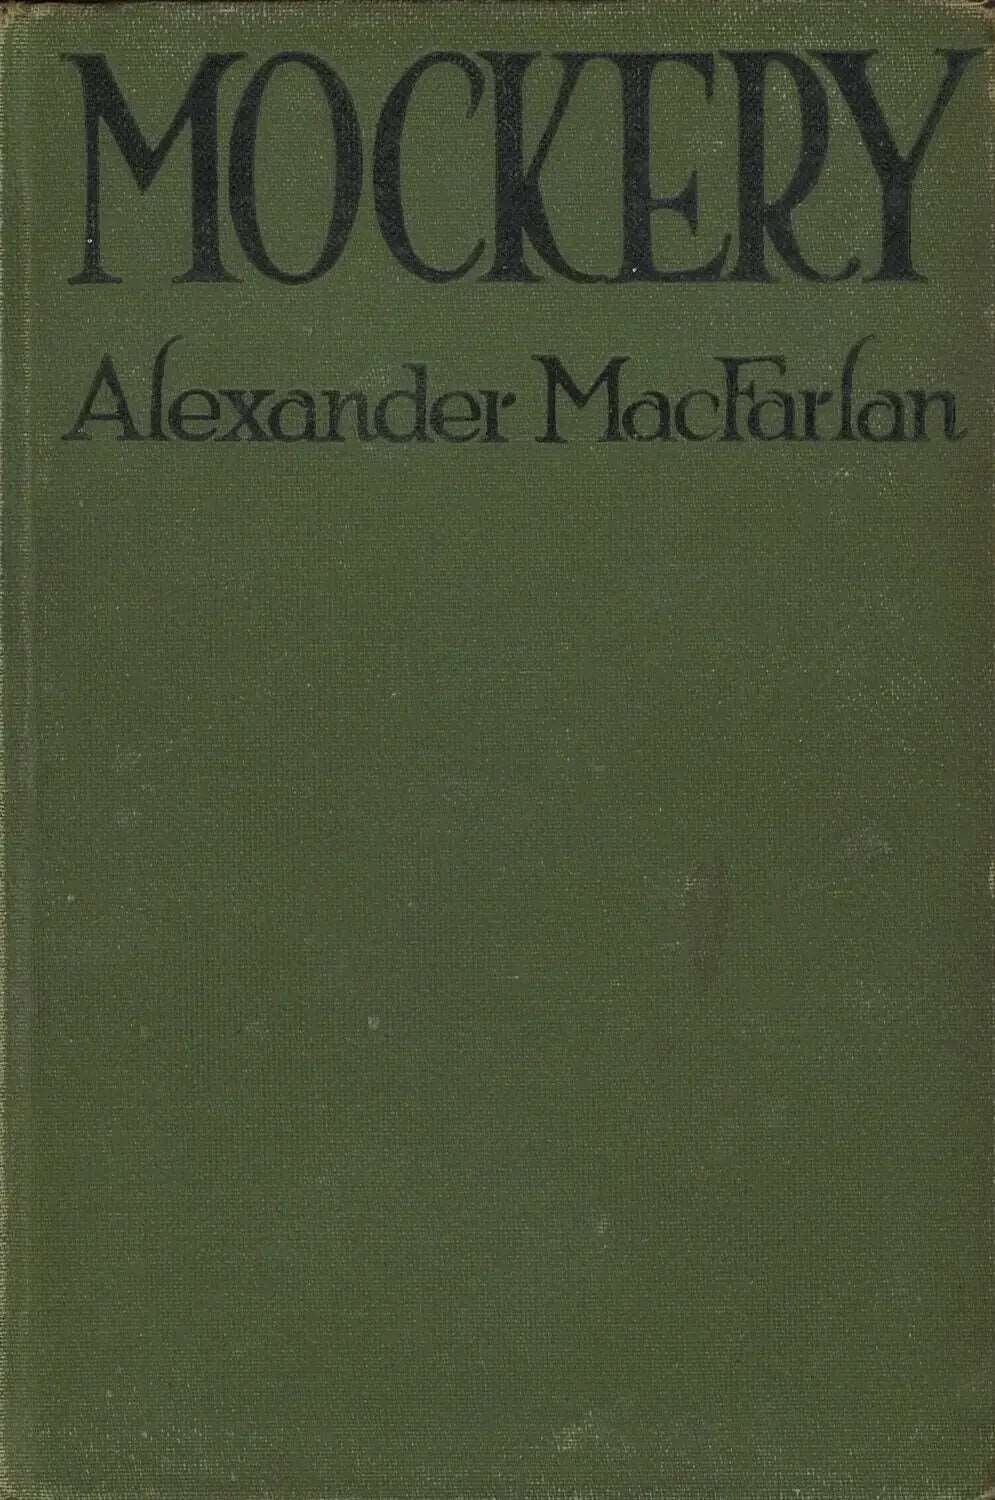 Mockery: A Tale of Deception by Alexander MacFarlan